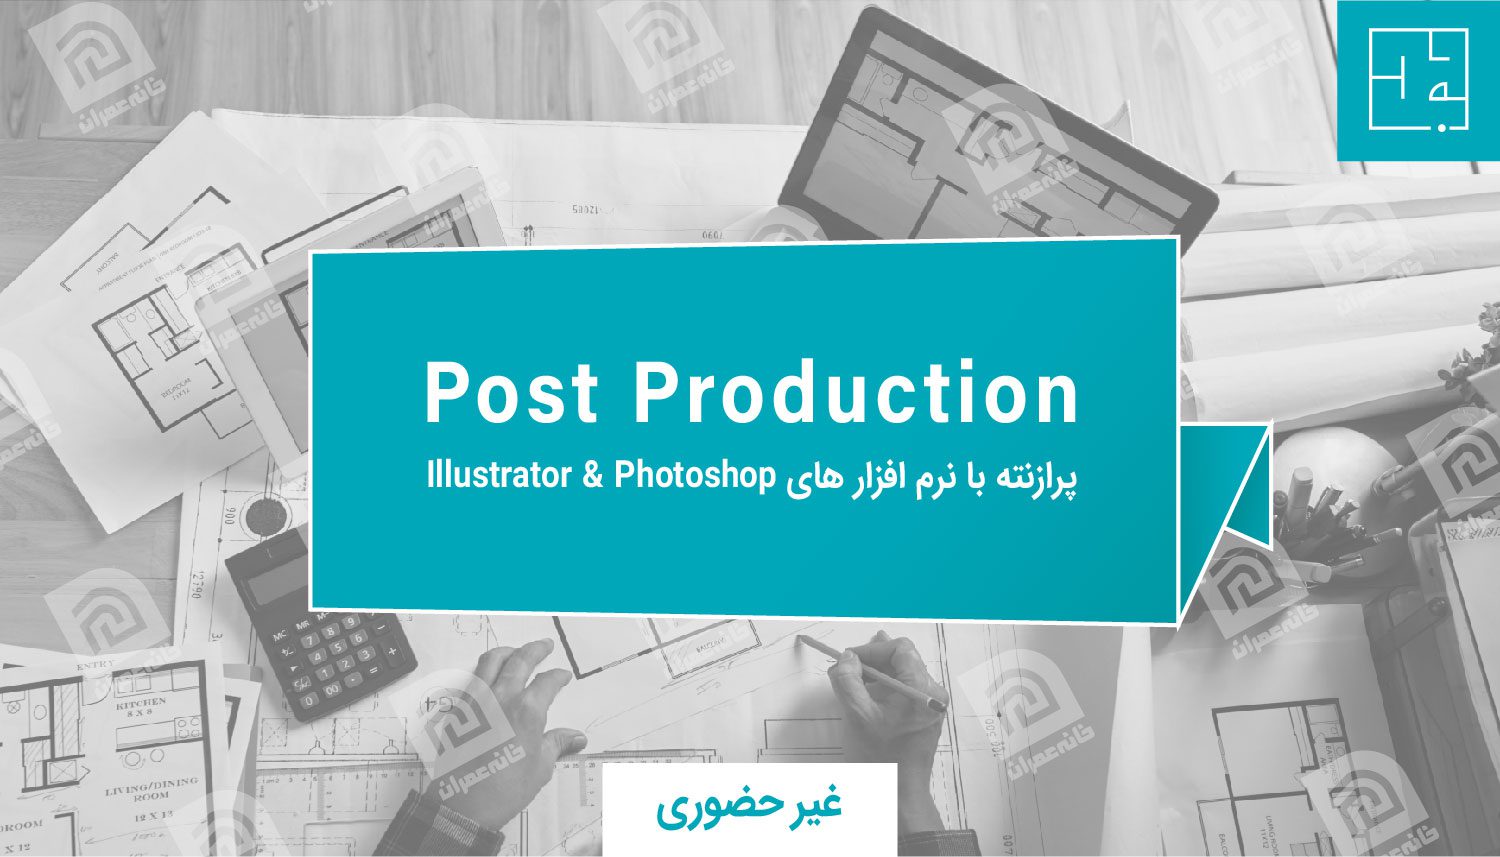 آموزش Post Production